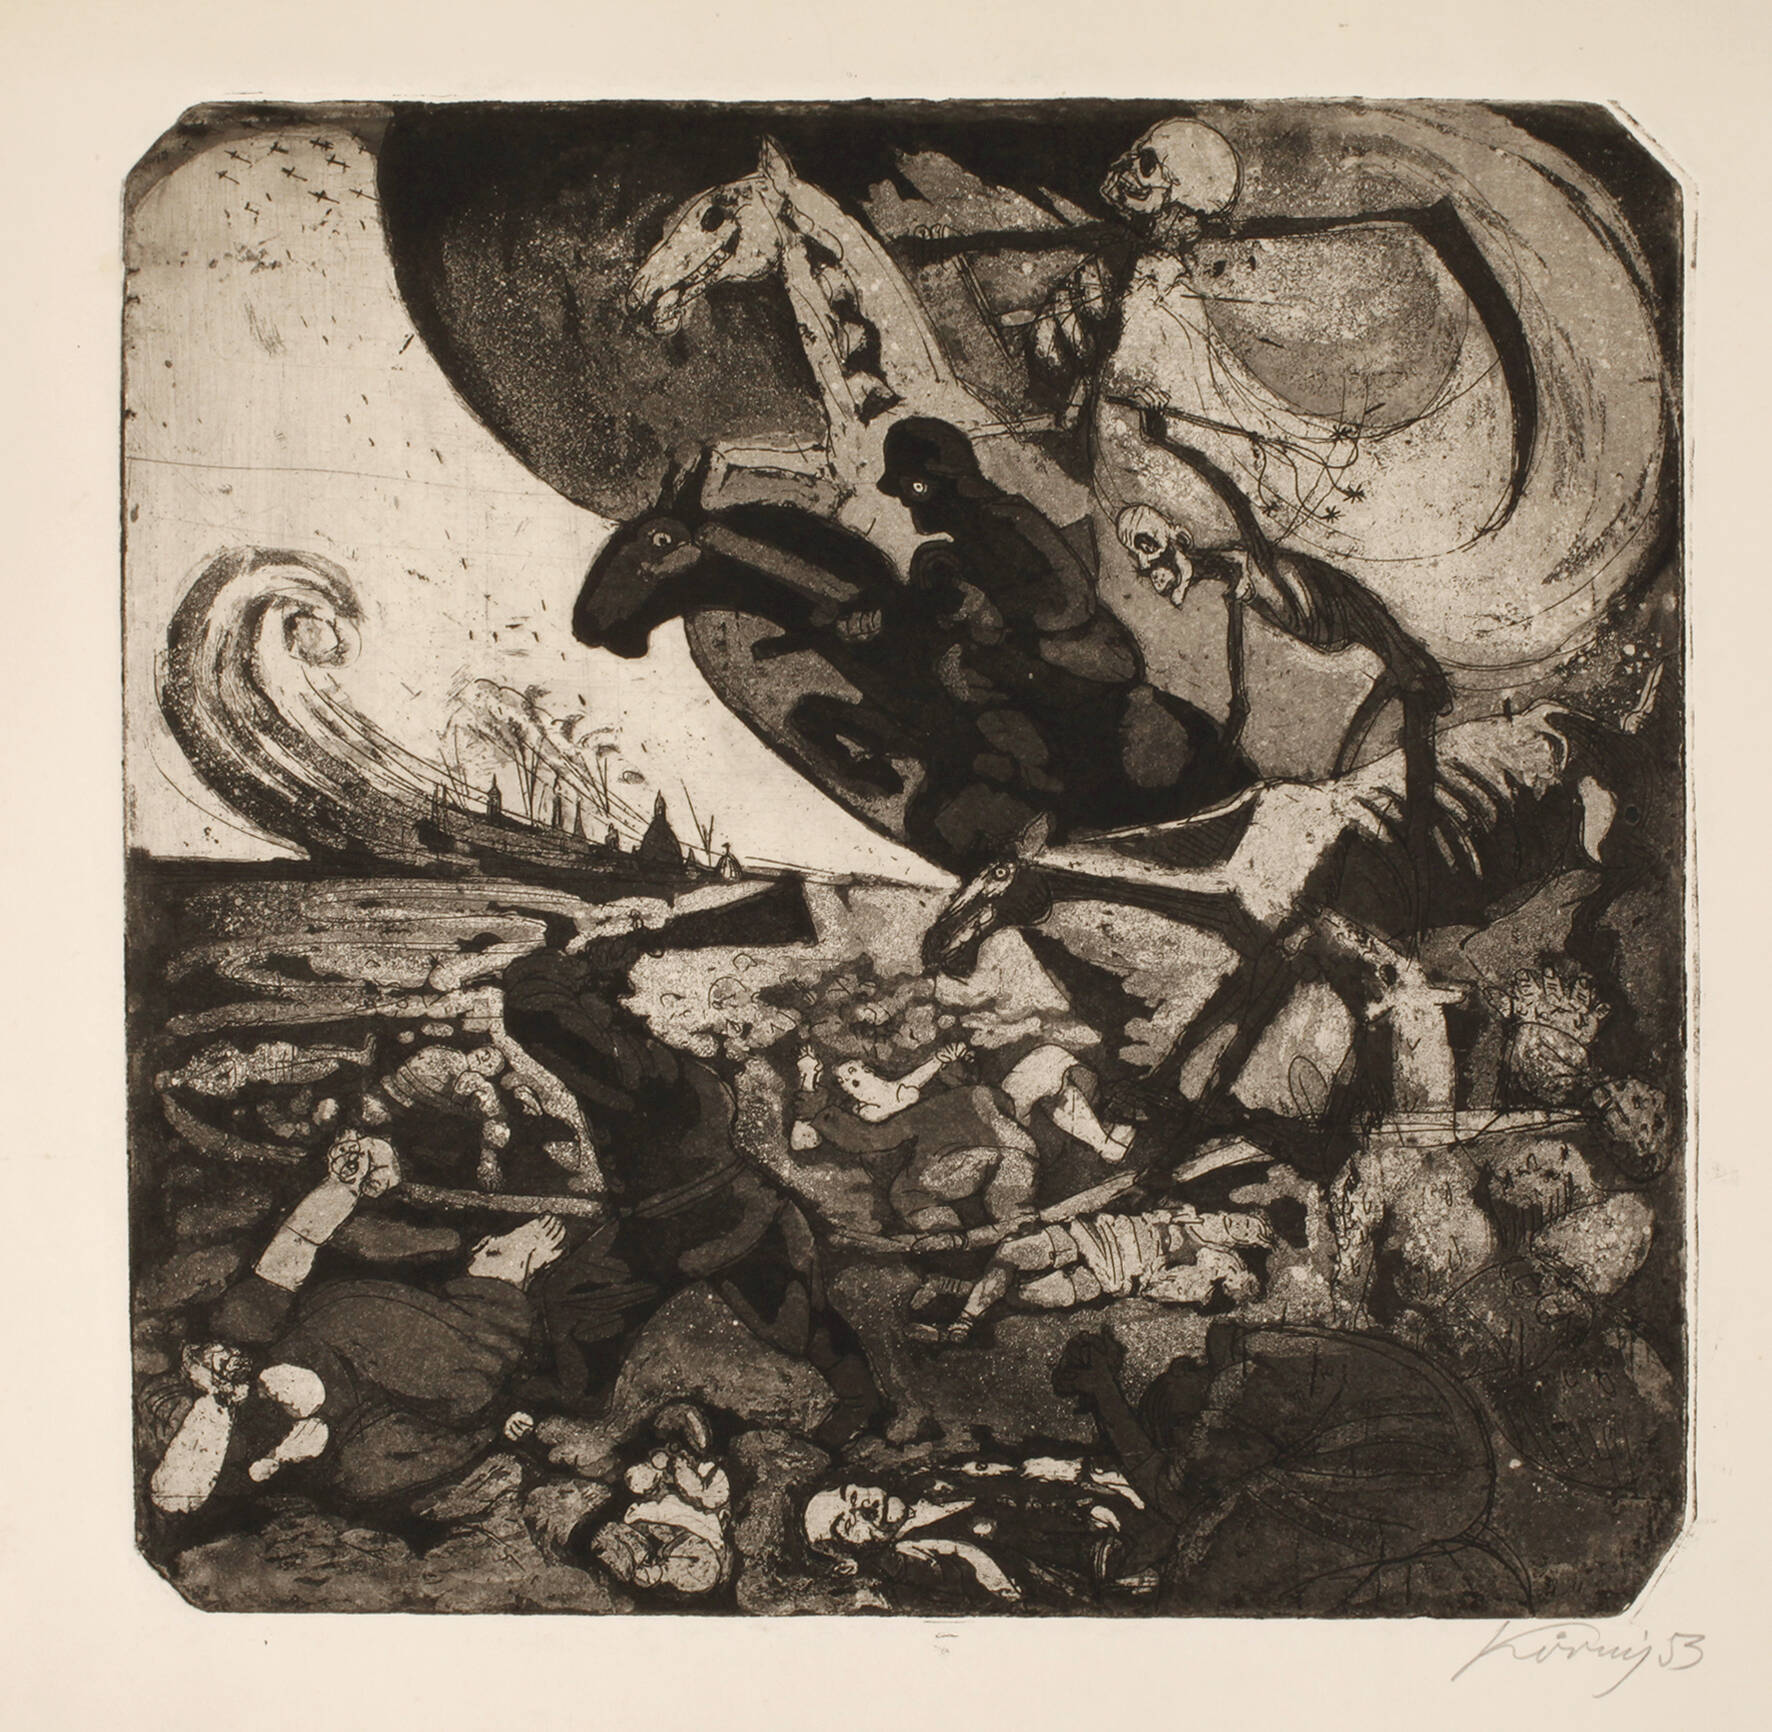 Hans Körnig, "Die apokalyptischen Reiter"